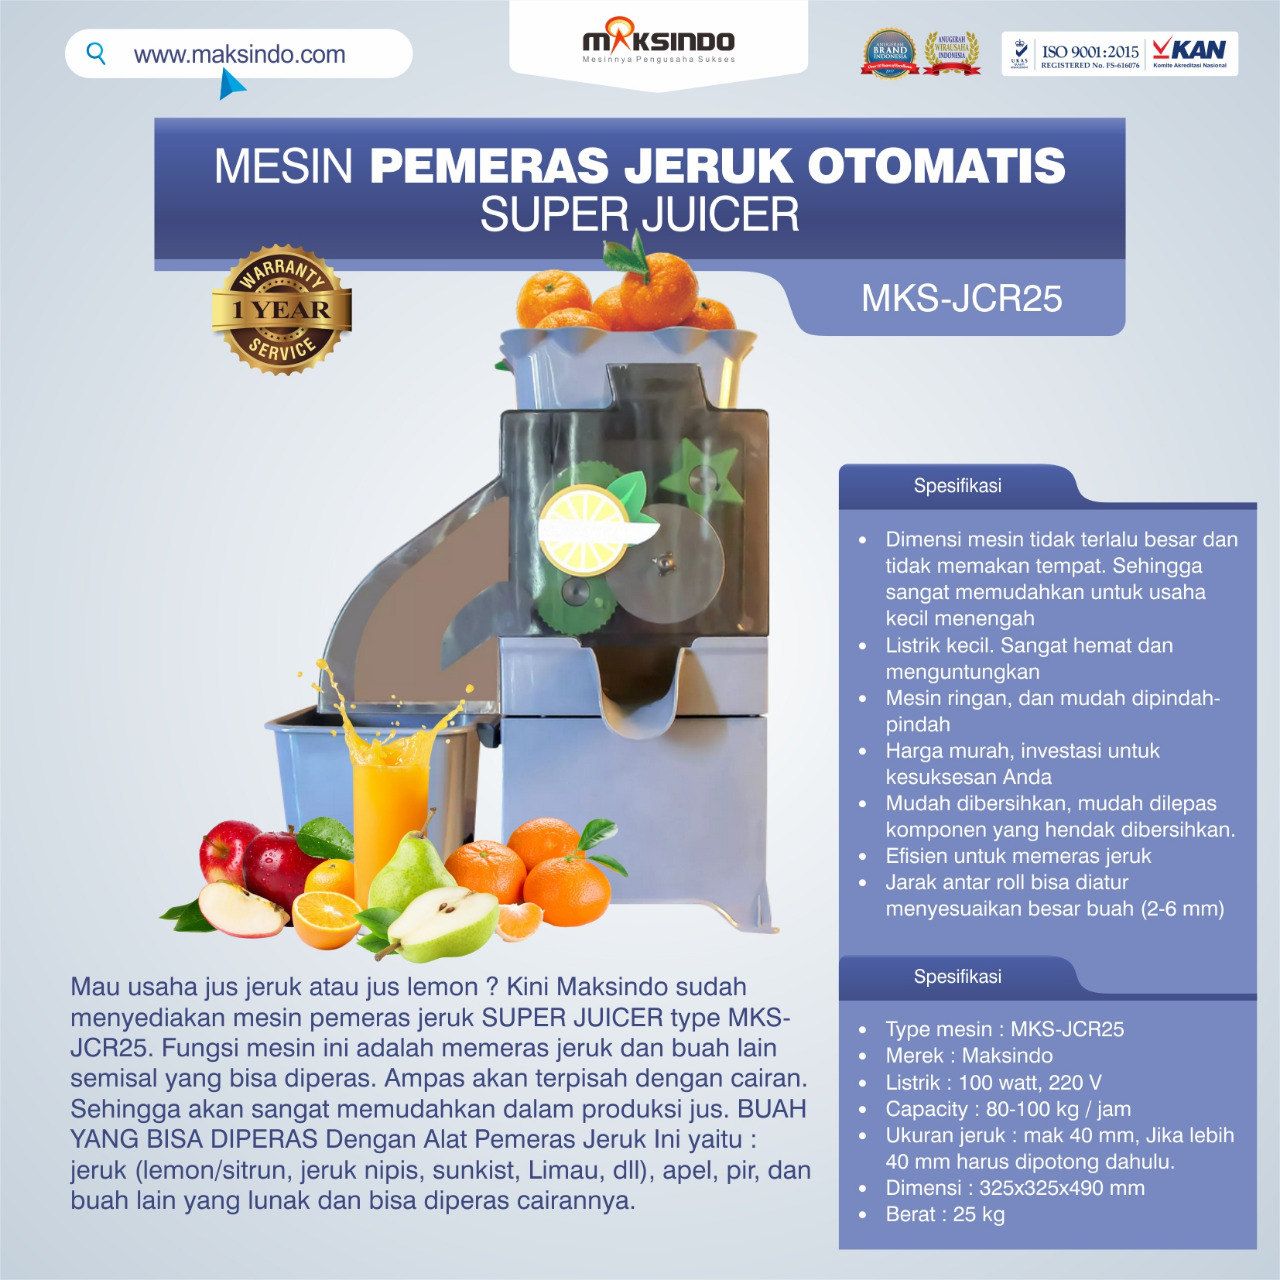 Jual Mesin Pemeras Jeruk Otomatis Super Juicer MKS-JCR25 di Makassar